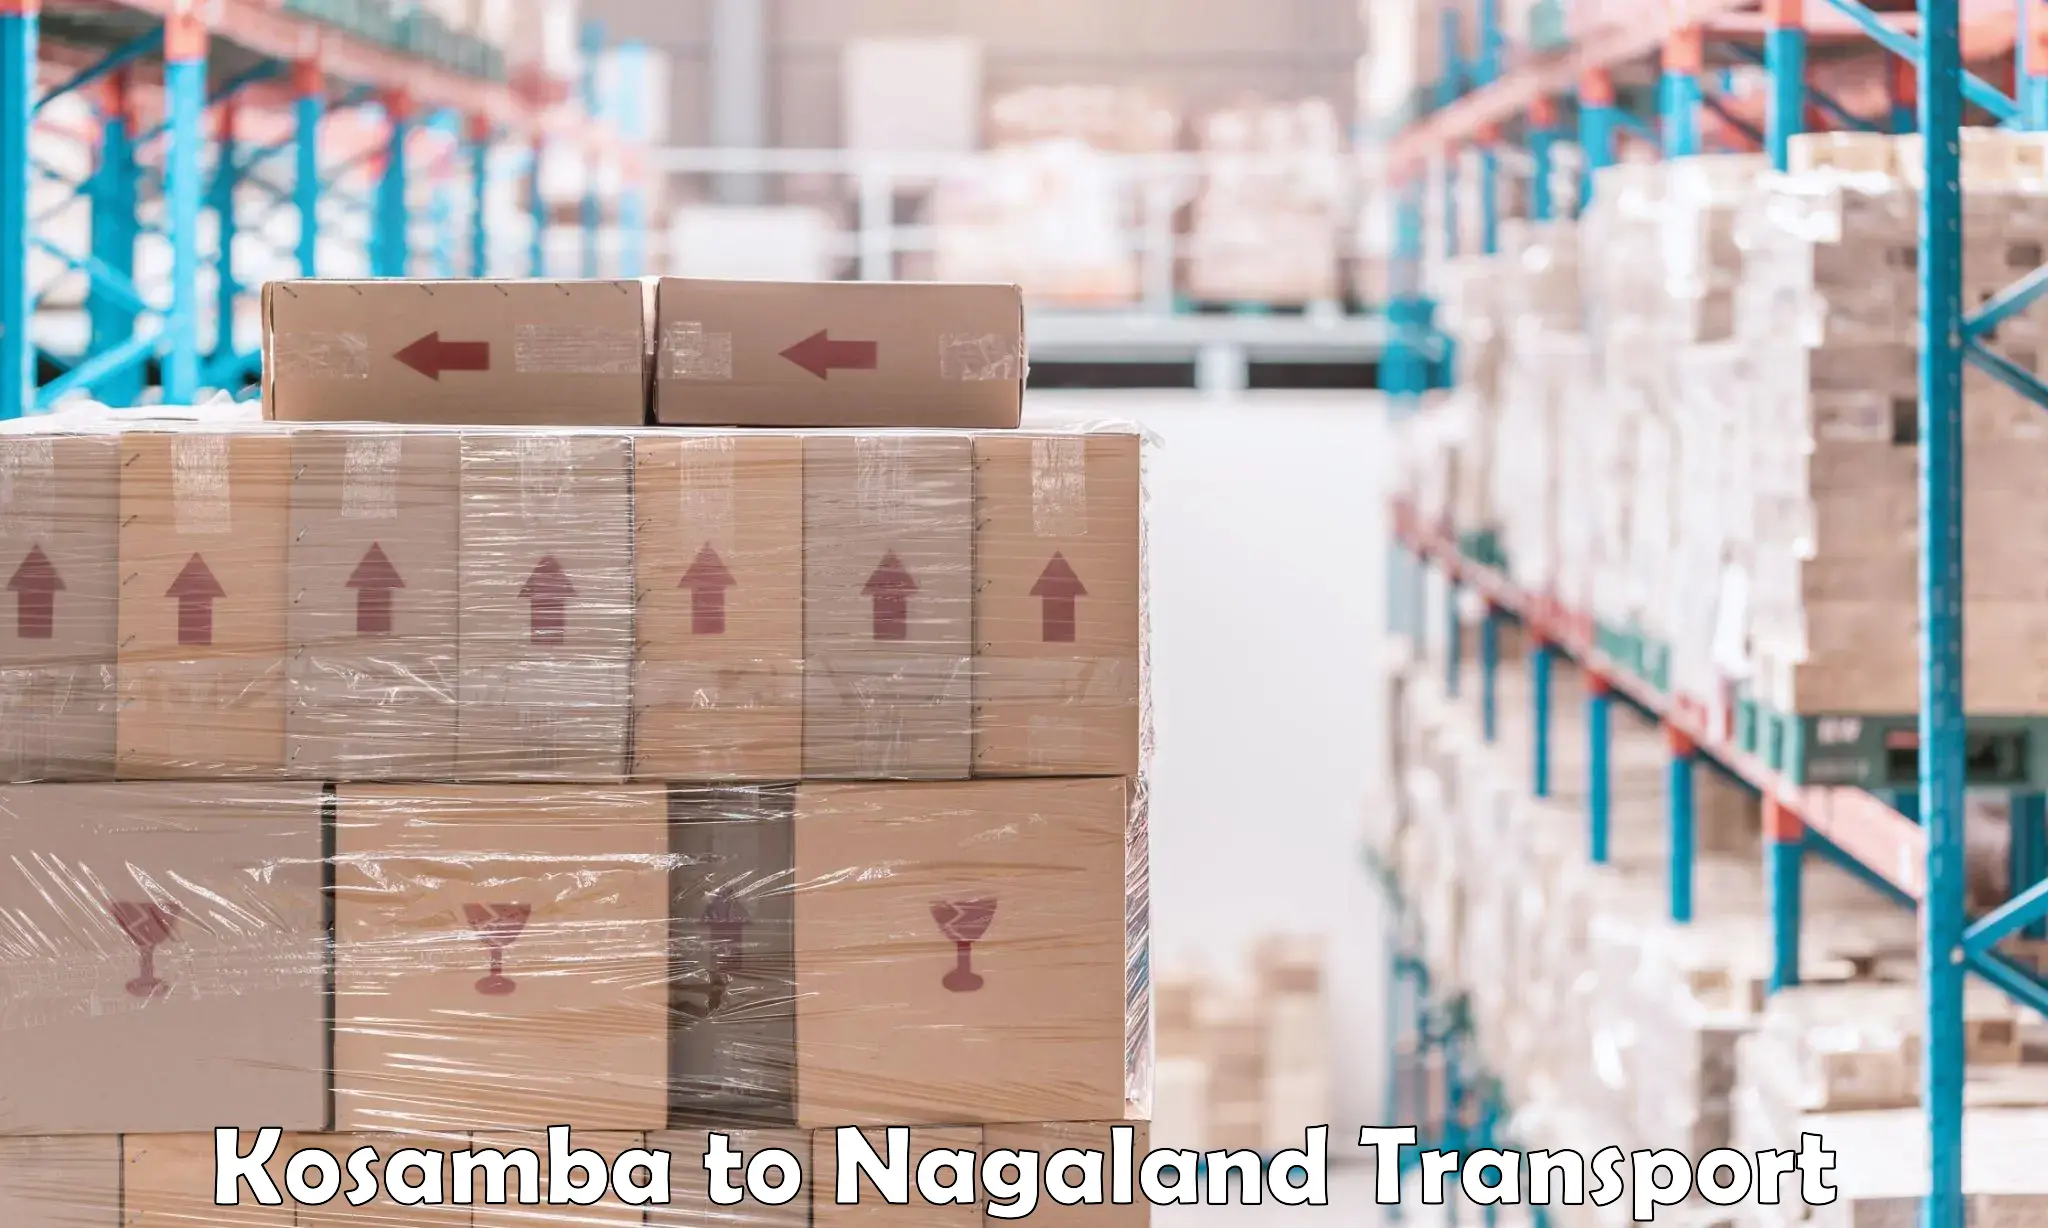 Commercial transport service Kosamba to Nagaland